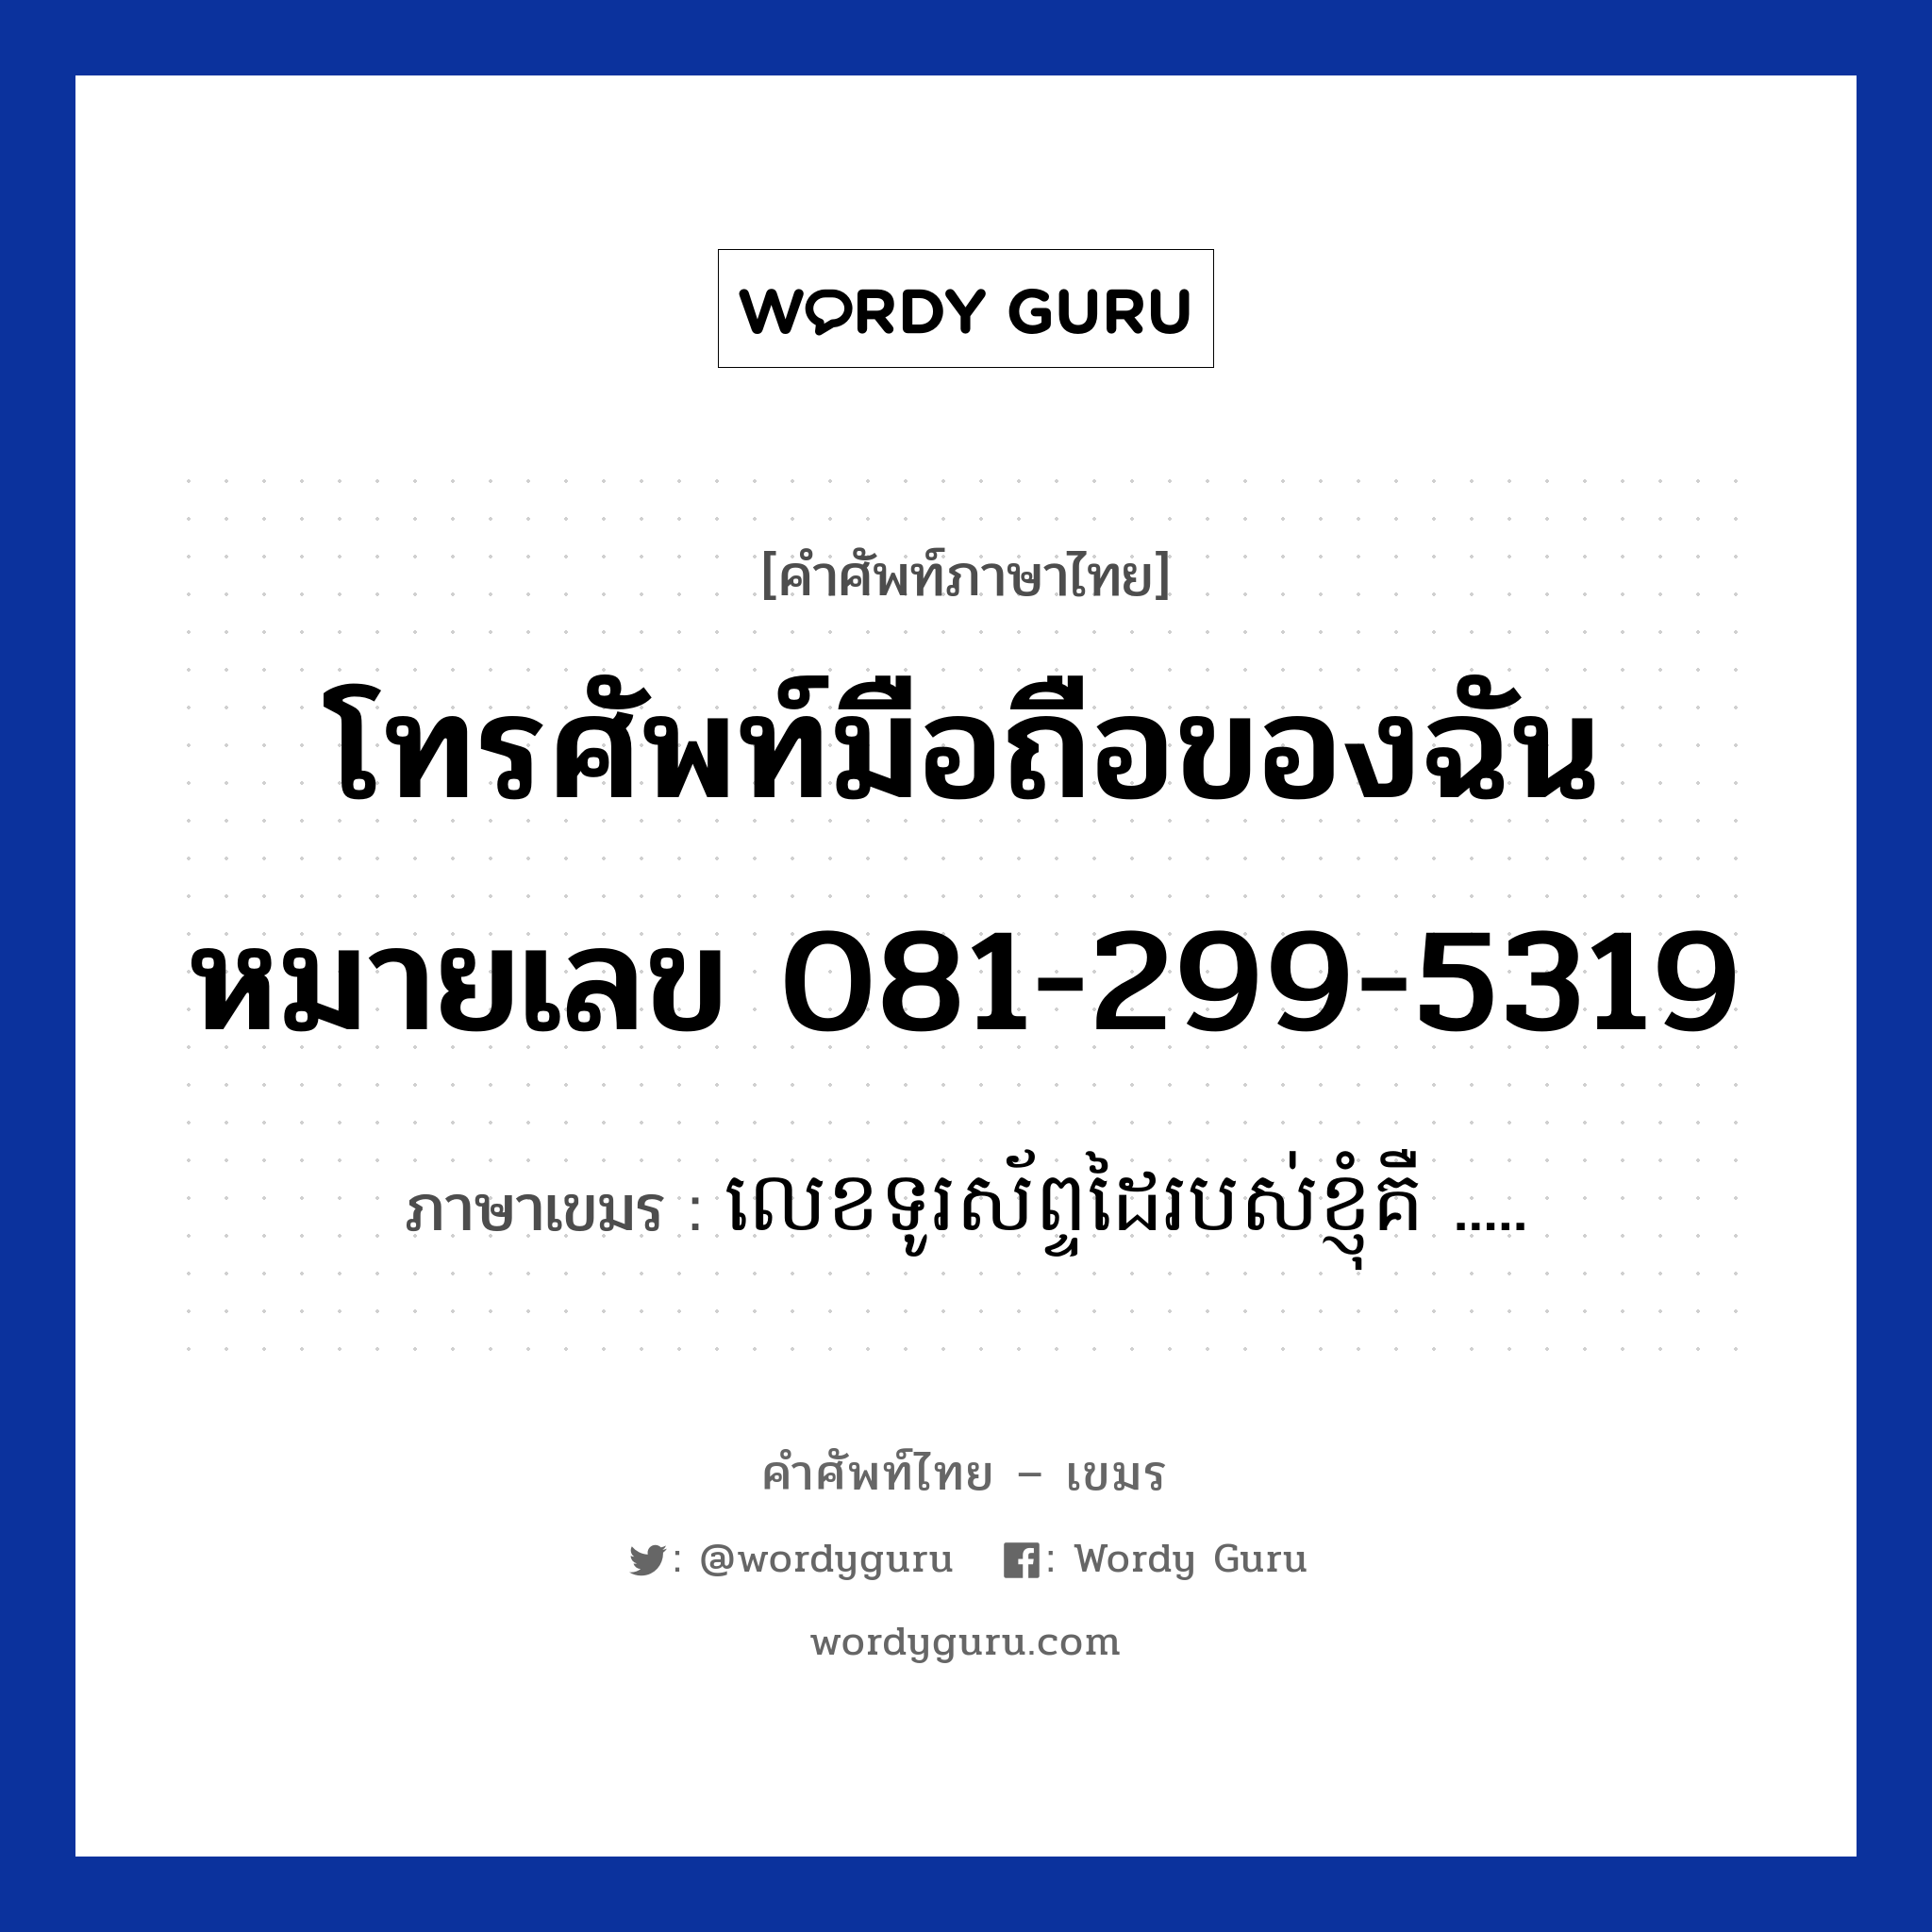 โทรศัพท์มือถือของฉันหมายเลข 081-299-5319 ภาษาเขมรคืออะไร, คำศัพท์ภาษาไทย - เขมร โทรศัพท์มือถือของฉันหมายเลข 081-299-5319 ภาษาเขมร លេខទូរស័ព្ទដៃរបស់ខ្ញុំគឺ ..... หมวด บทสนทนาทางโทรศัพท์ leak turasabdai robos knhom kerr หมวด บทสนทนาทางโทรศัพท์